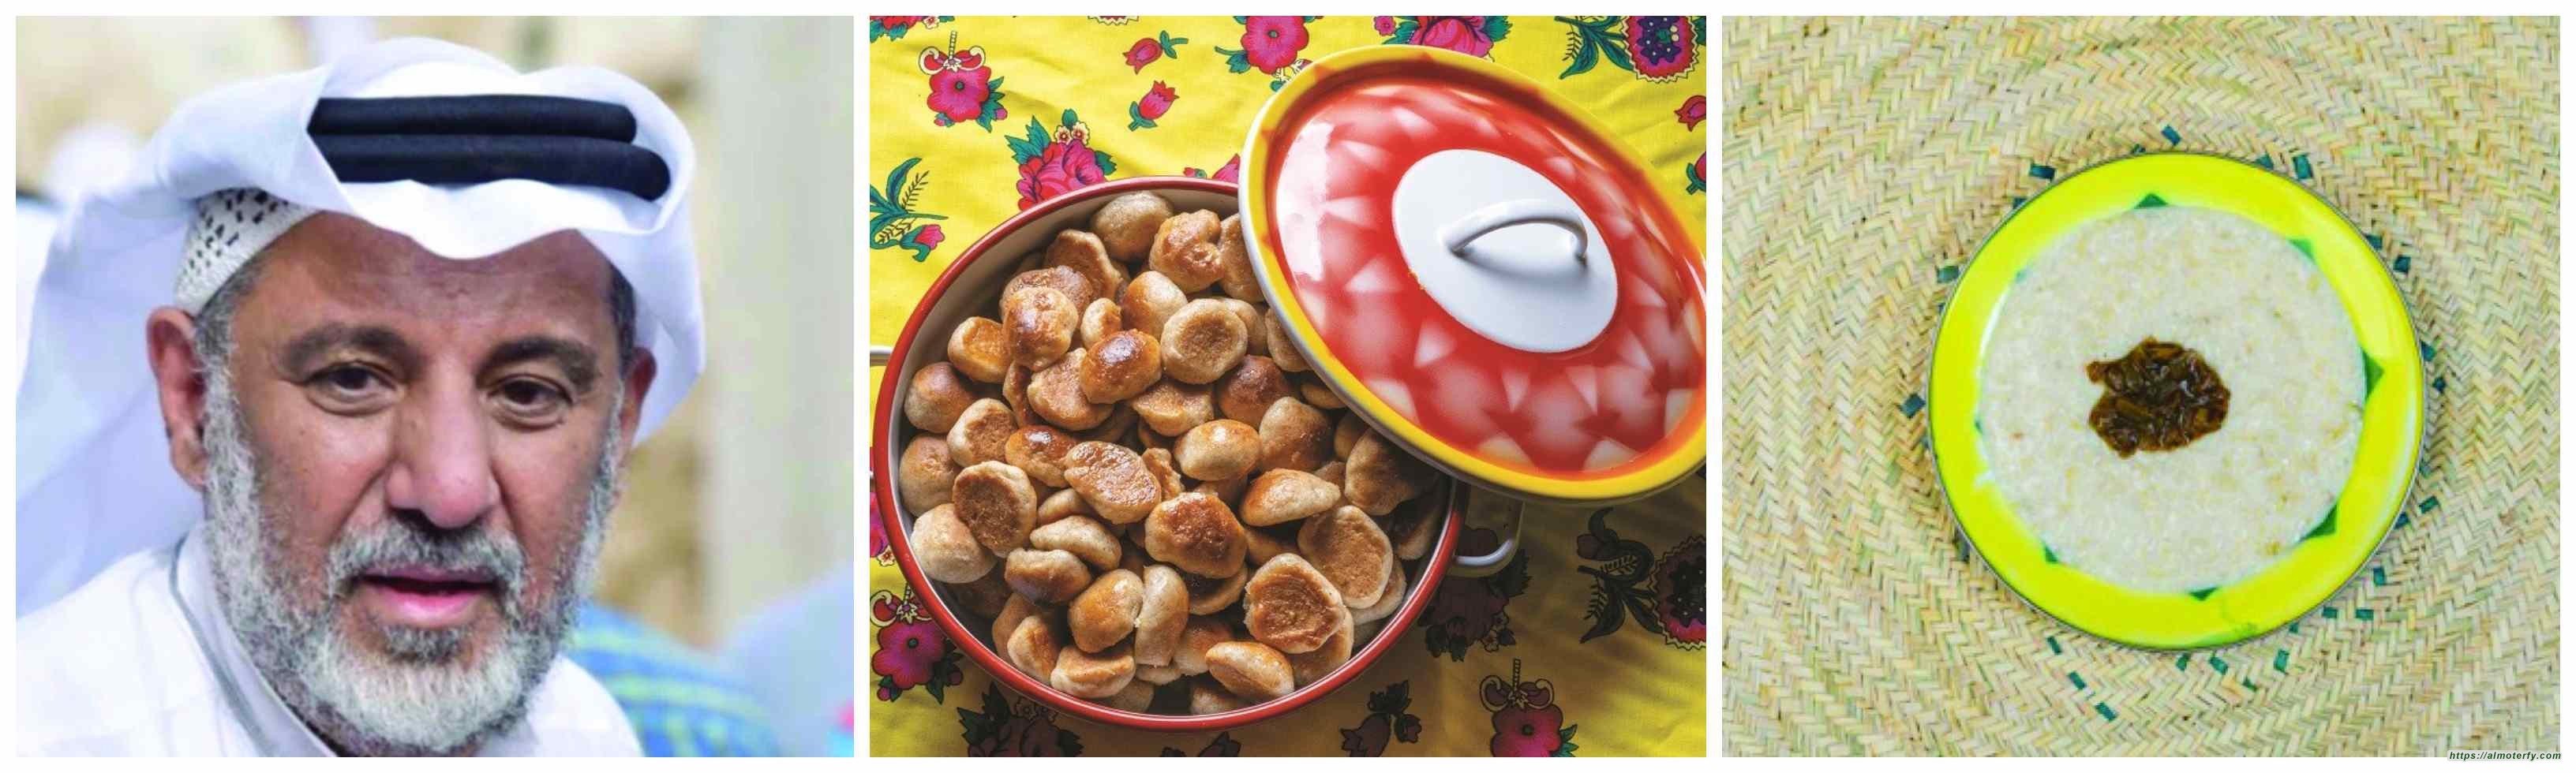 المؤرخ الشايب: «روايات الأطباق الوطنية» ترسخ ثقافة المطبخ السعودي